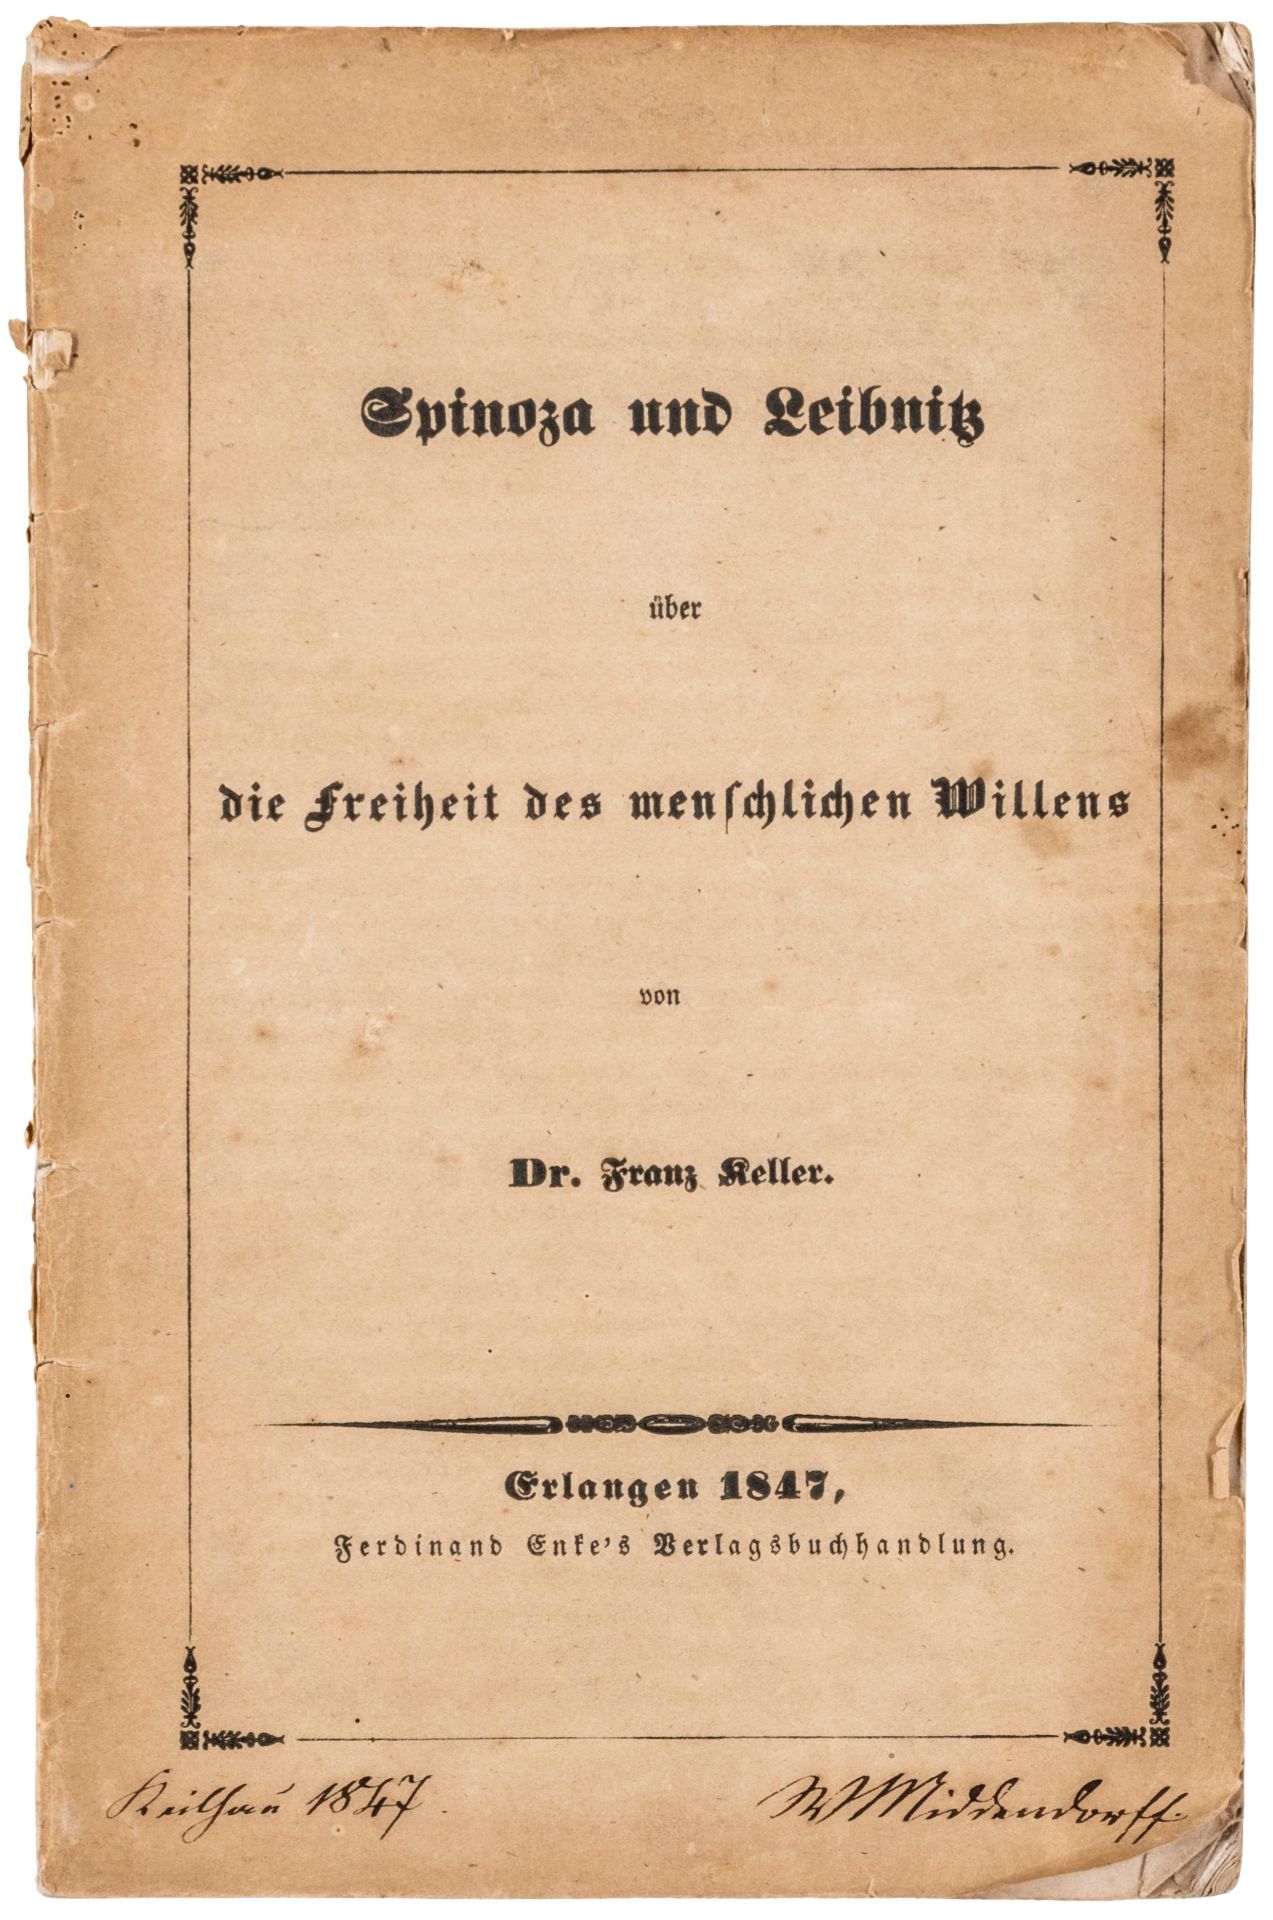 Fröbel, Wilhelm - - Middendorff, - Image 3 of 4